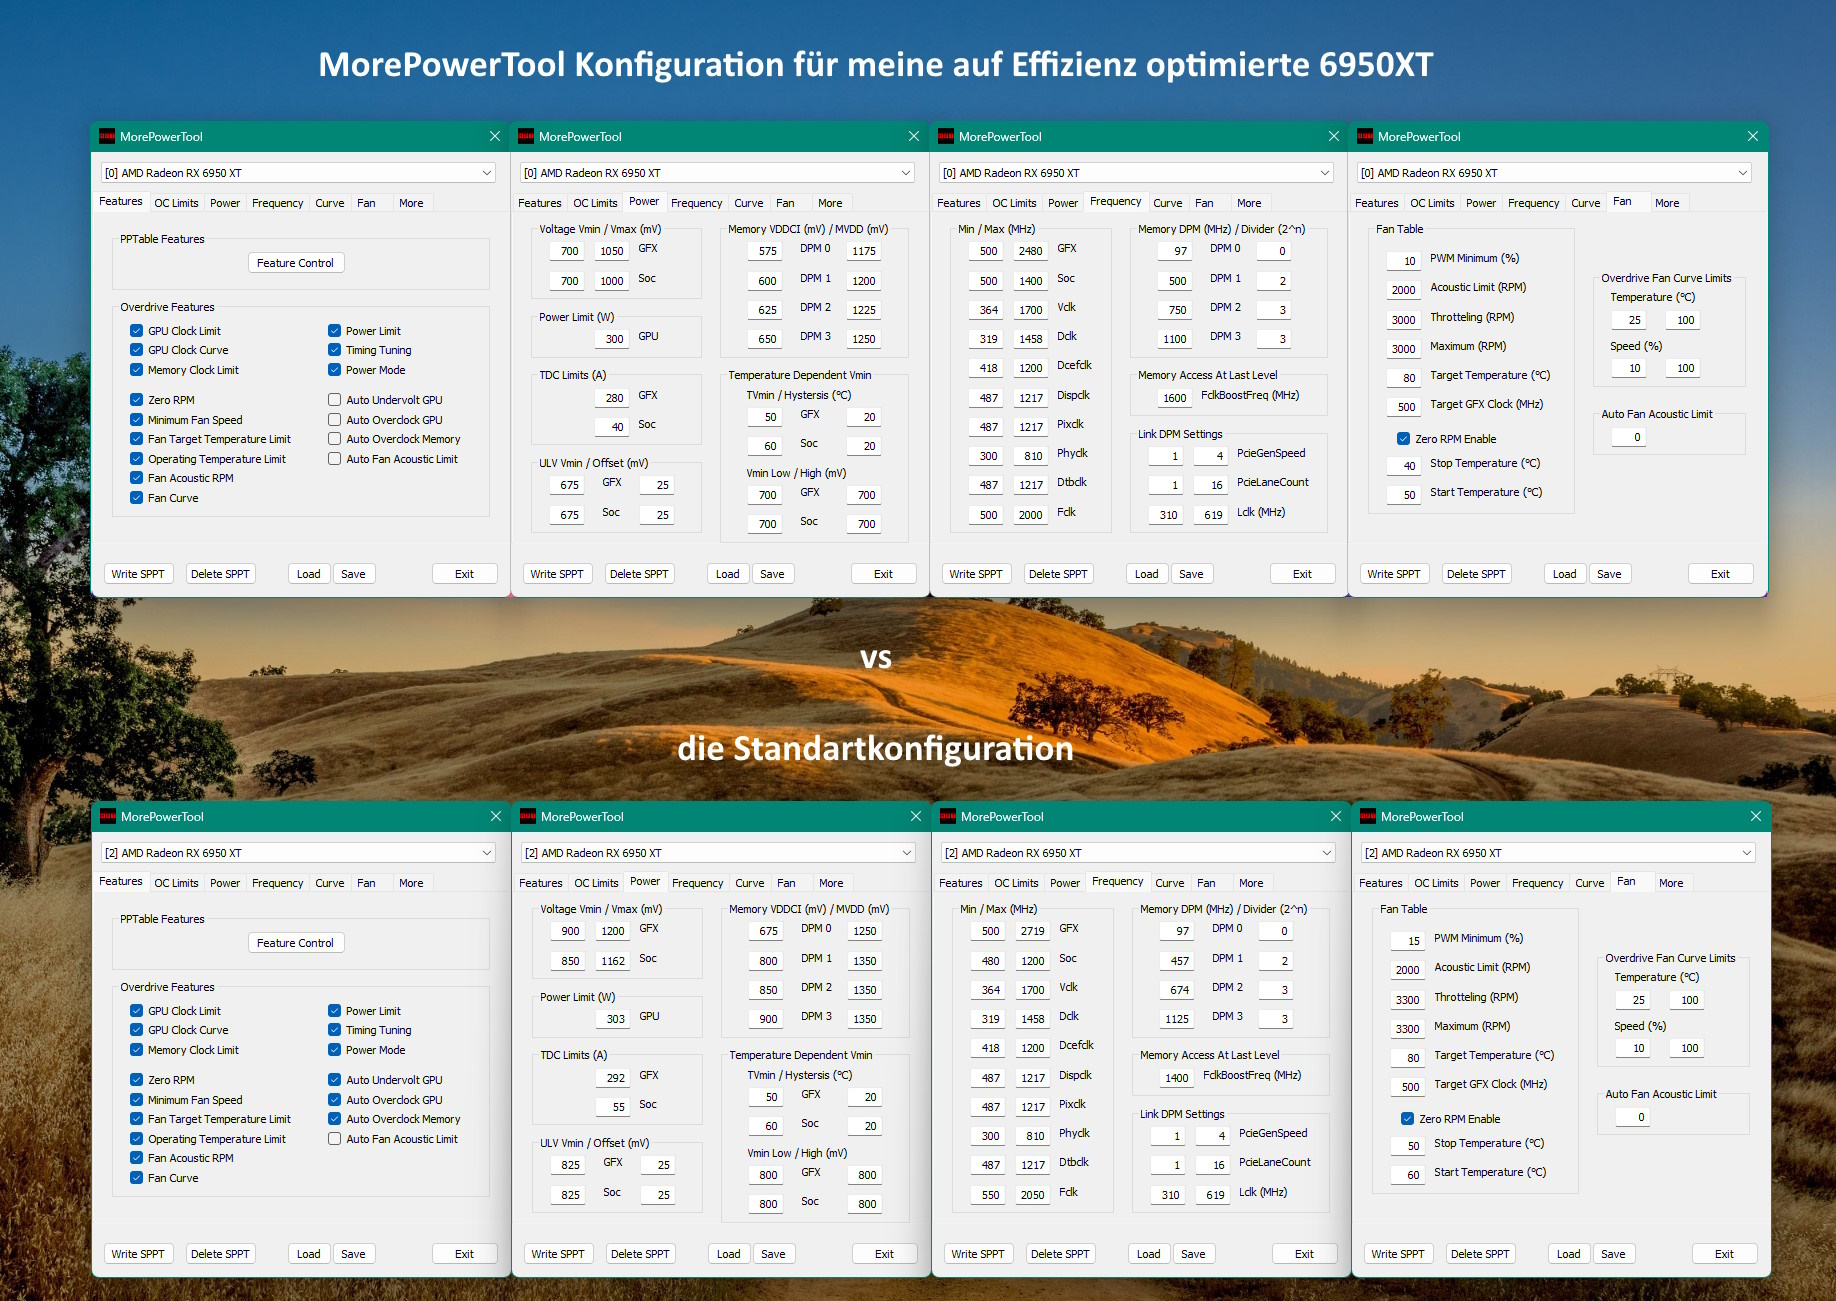 MorePowerTool Konfiguration für effiziente 2,4 GHz auf der 6950XT.jpg